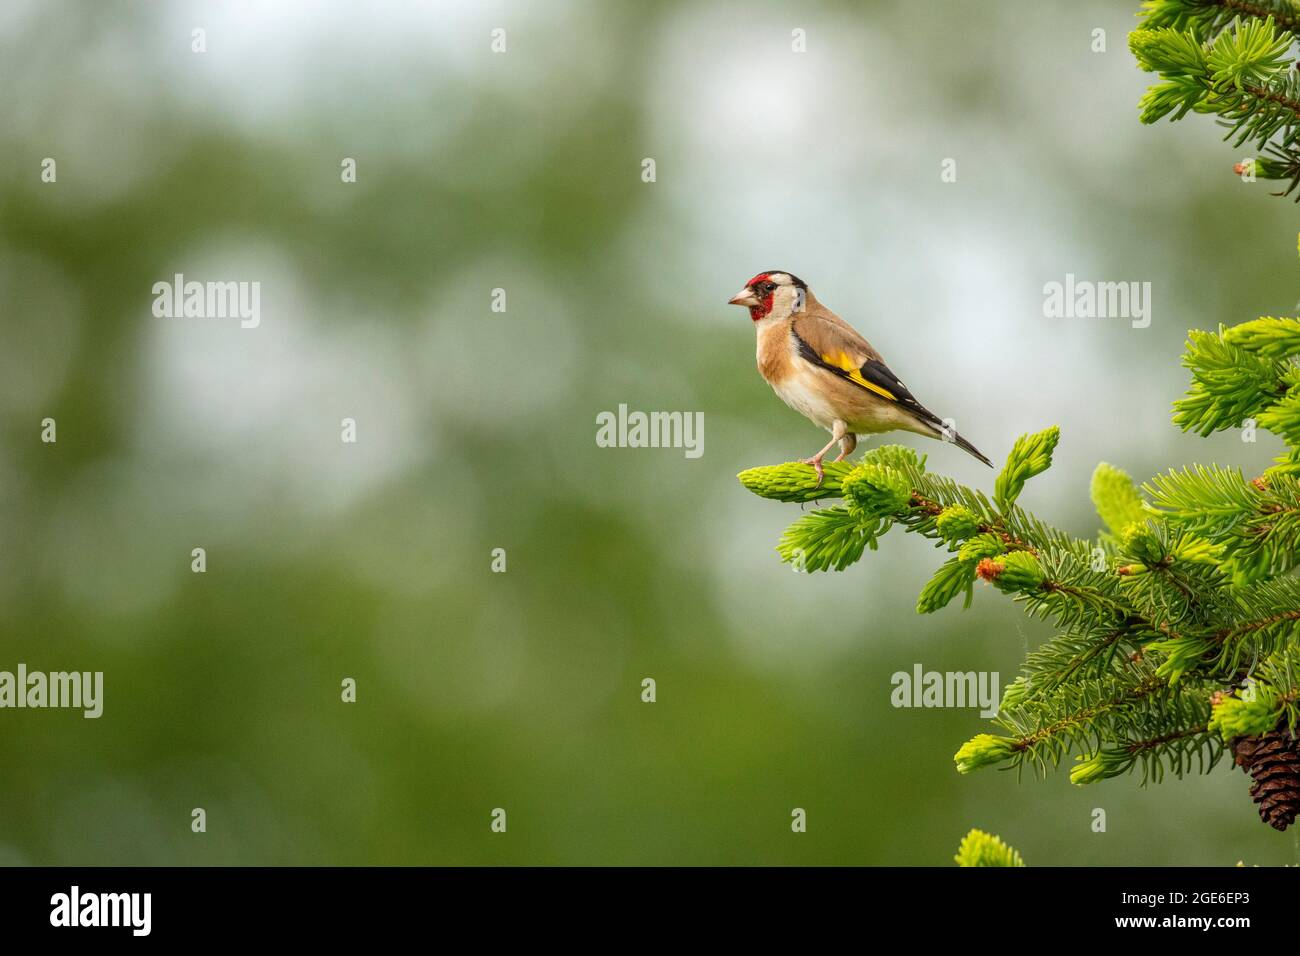 The Netherlands, Delden. Goldfinch (Carduelis carduelis). Stock Photo